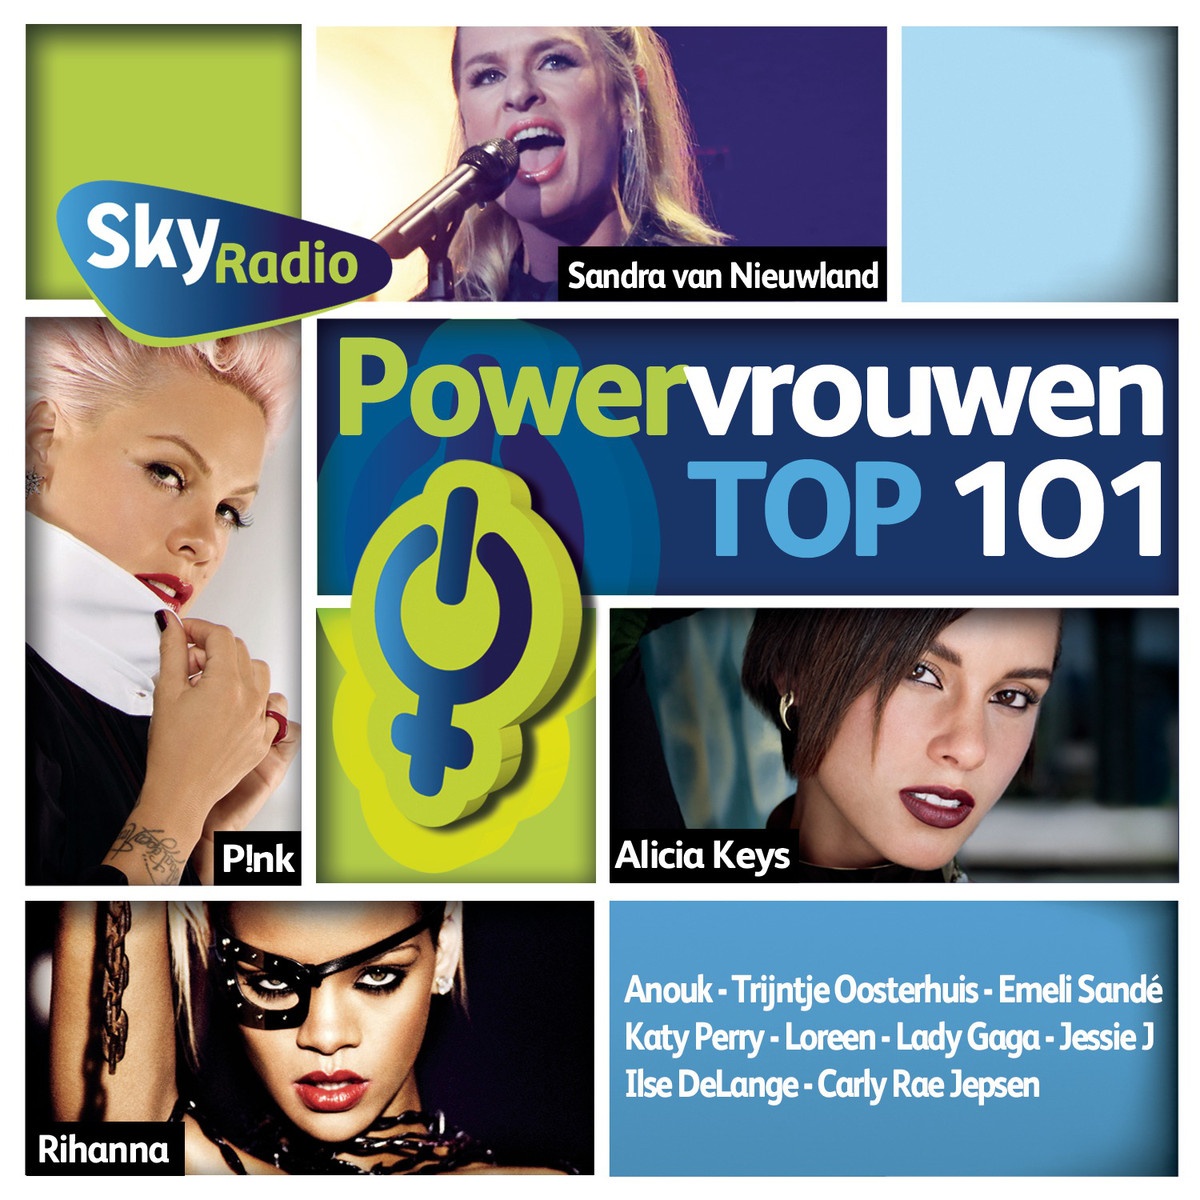  Power Vrouwen Top 101